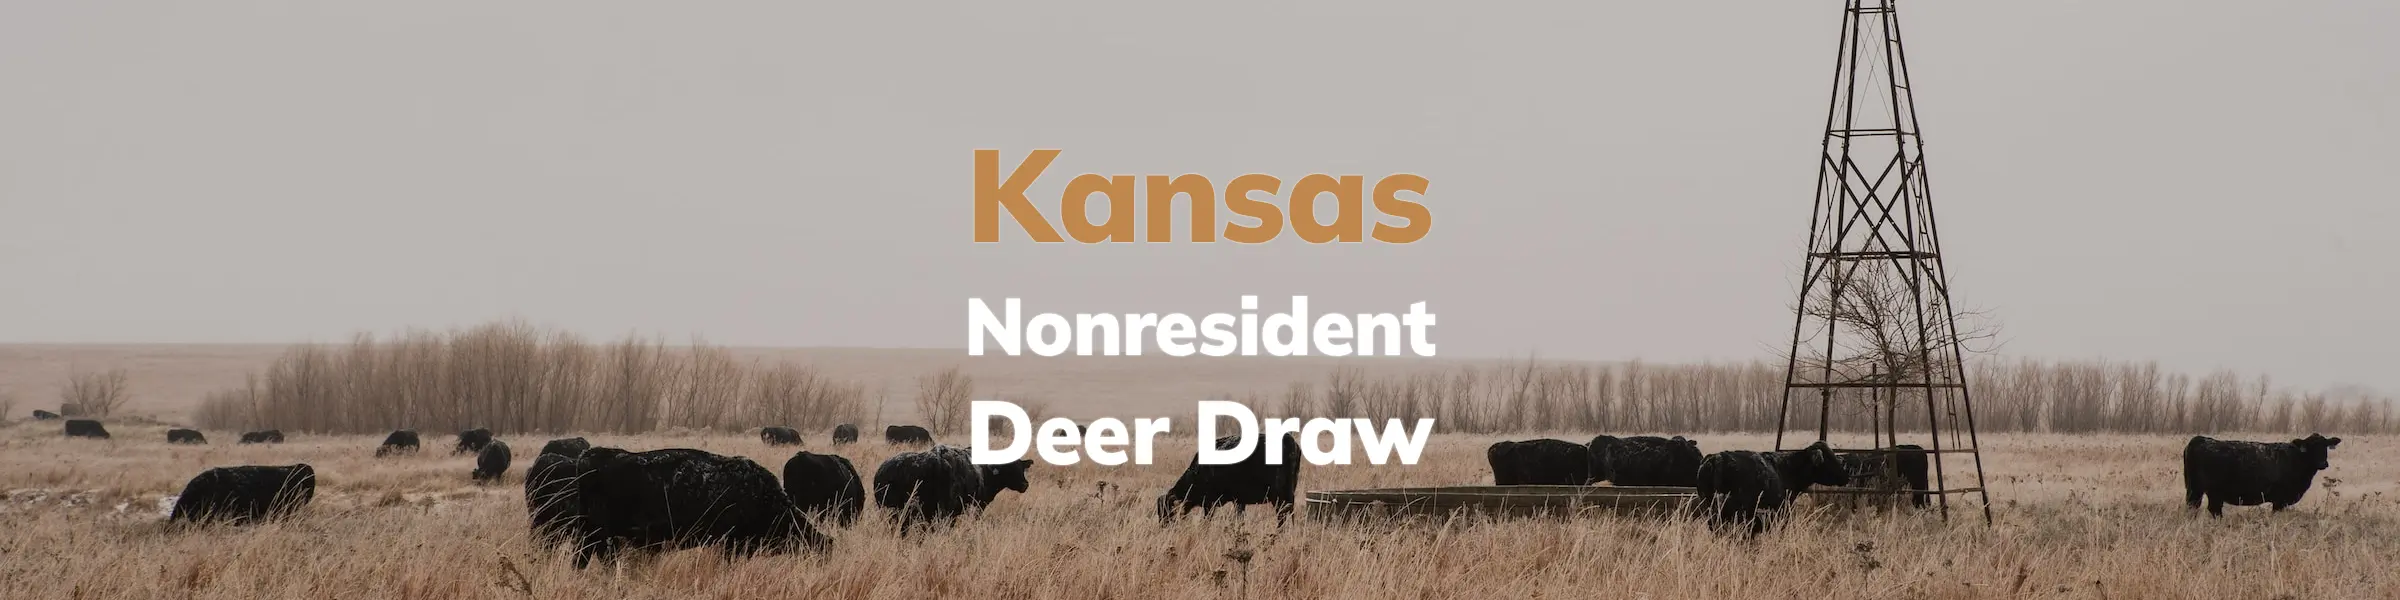 Kansas Deer Draw